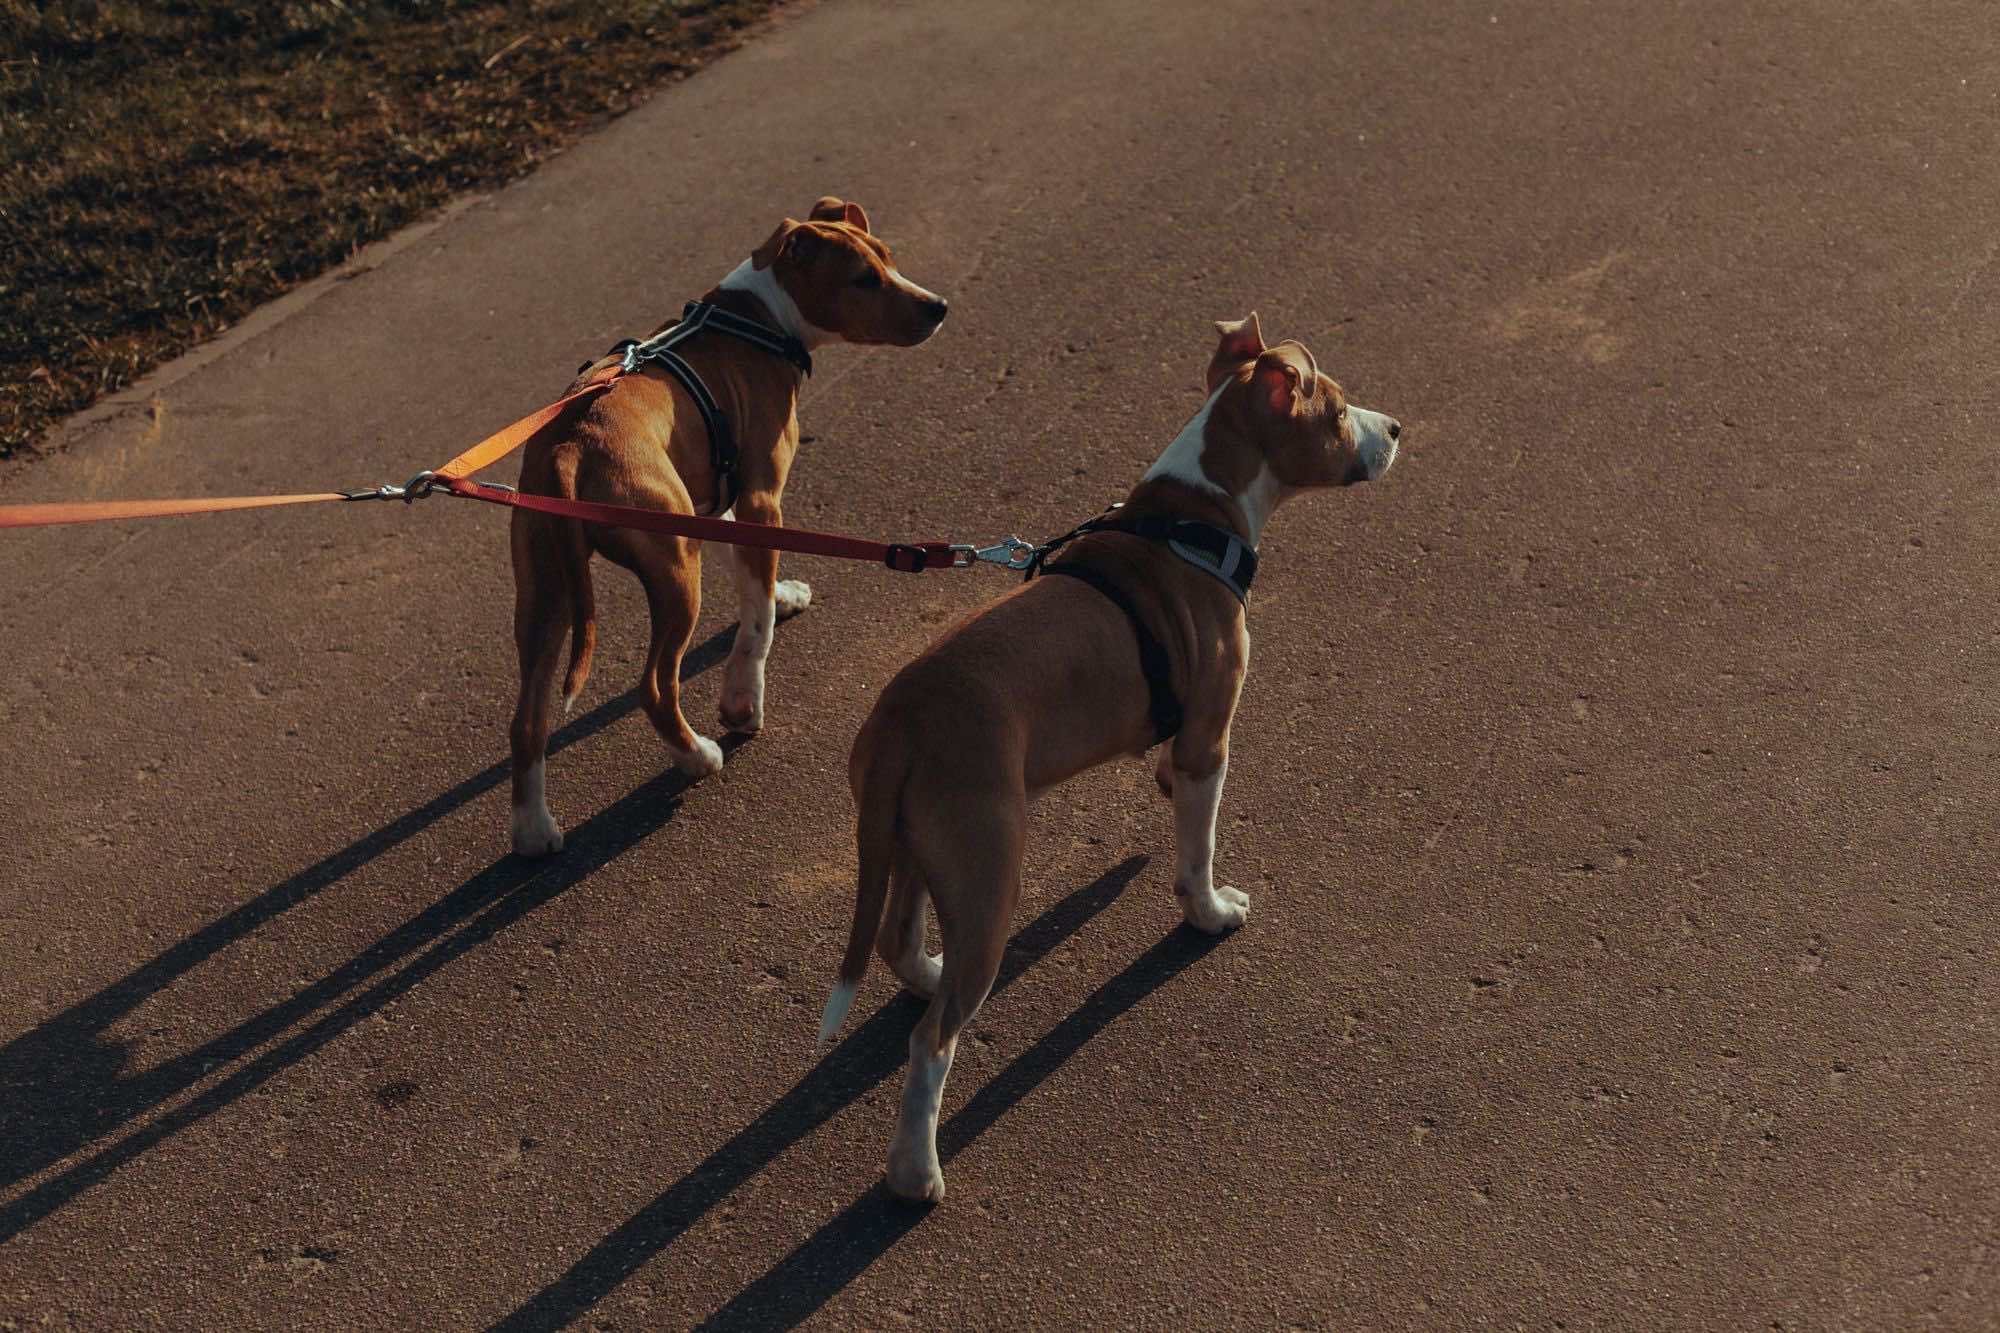 δύο σκυλιά με λουράκι δίπλα δίπλα στον δρόμο